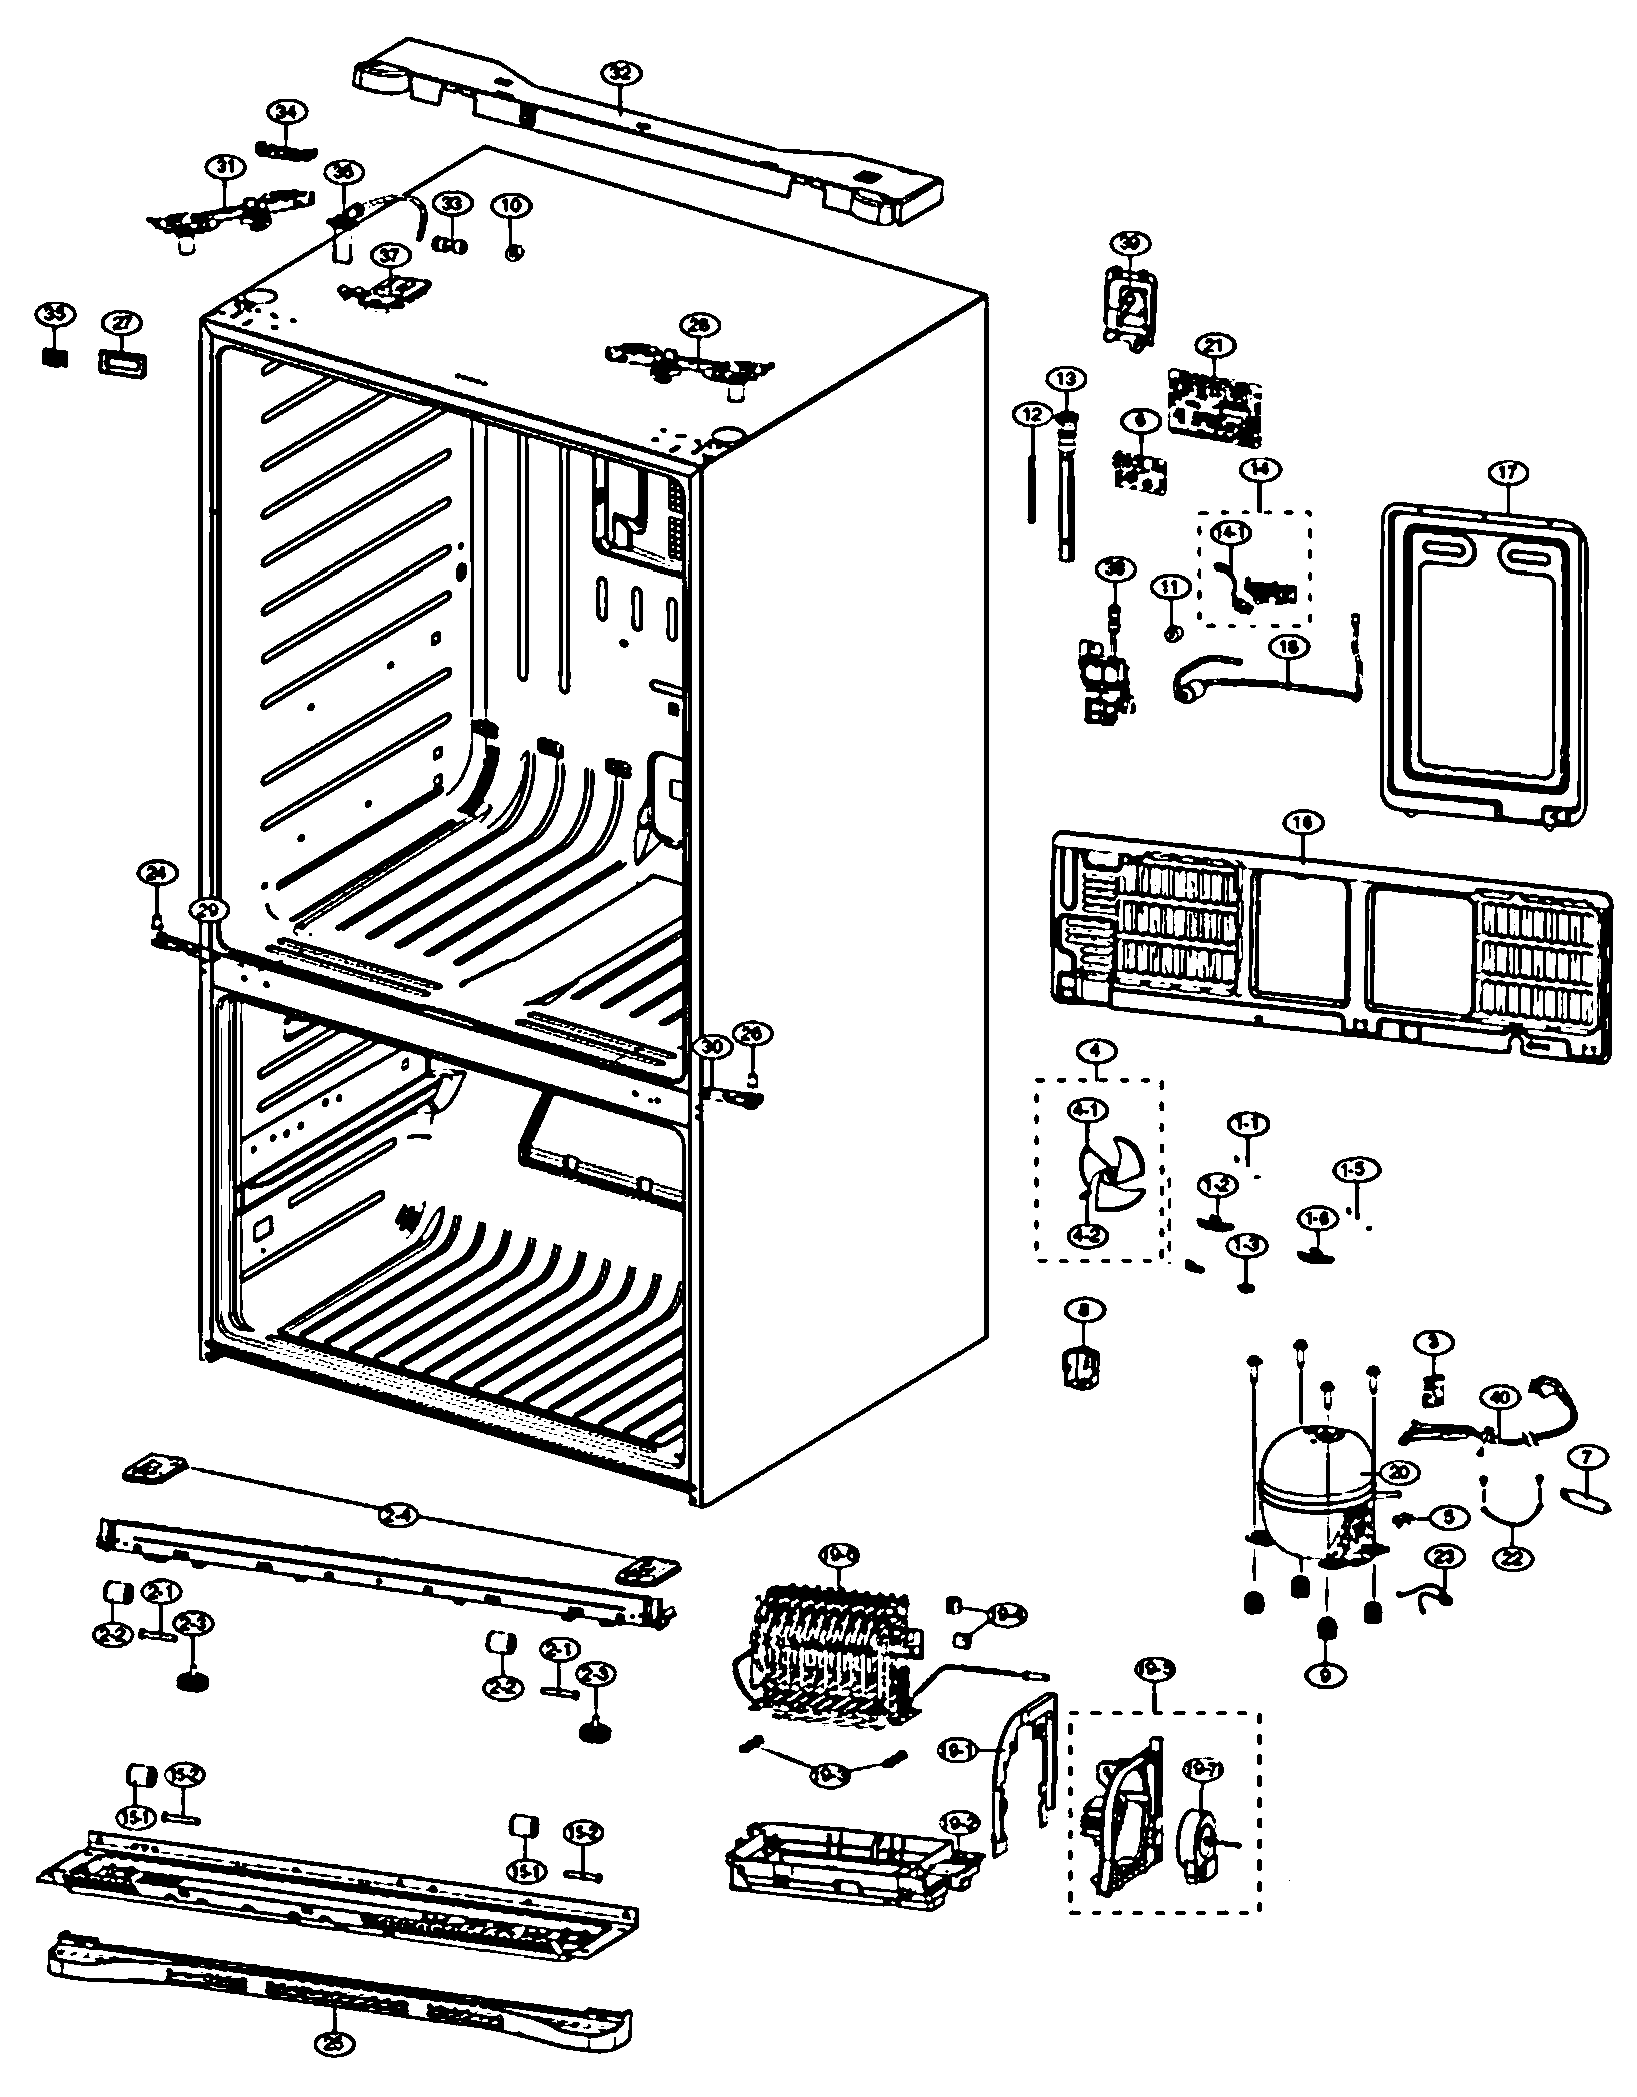 [DIAGRAM] Lg Refrigerator Diagram - MYDIAGRAM.ONLINE